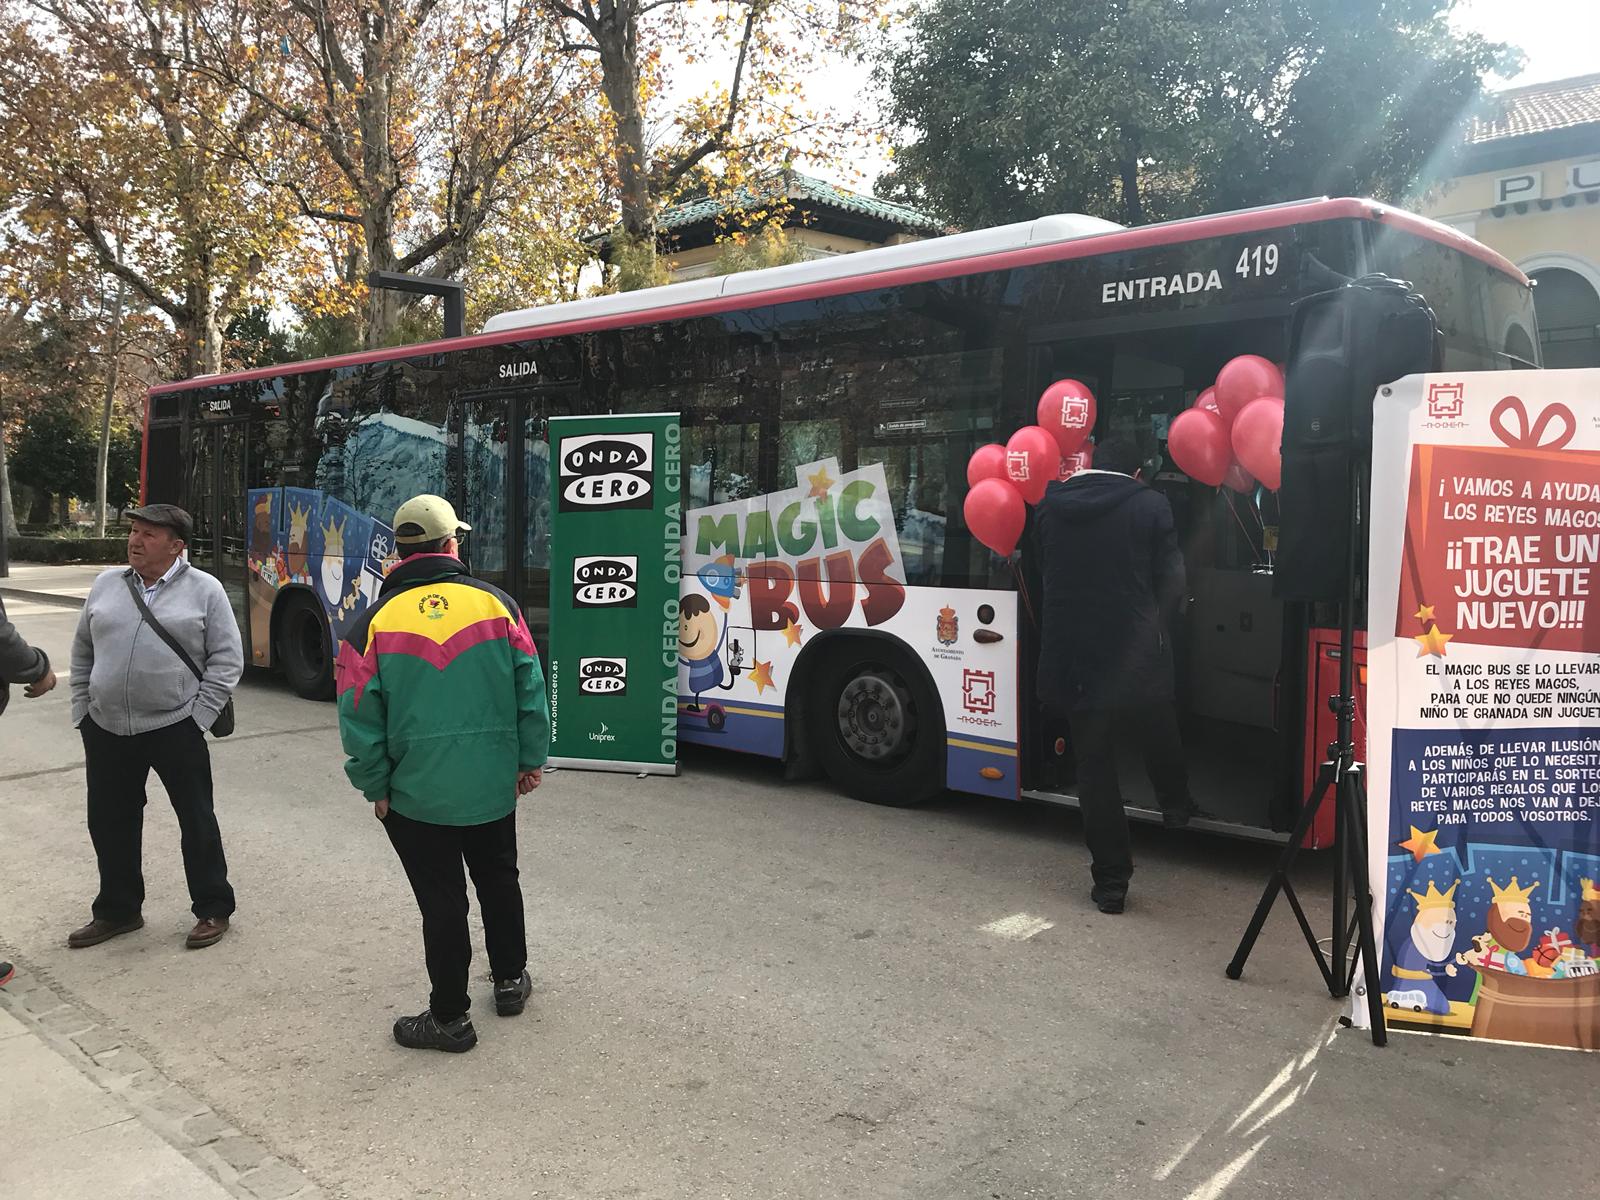 Magic Bus iniciativa solidaria